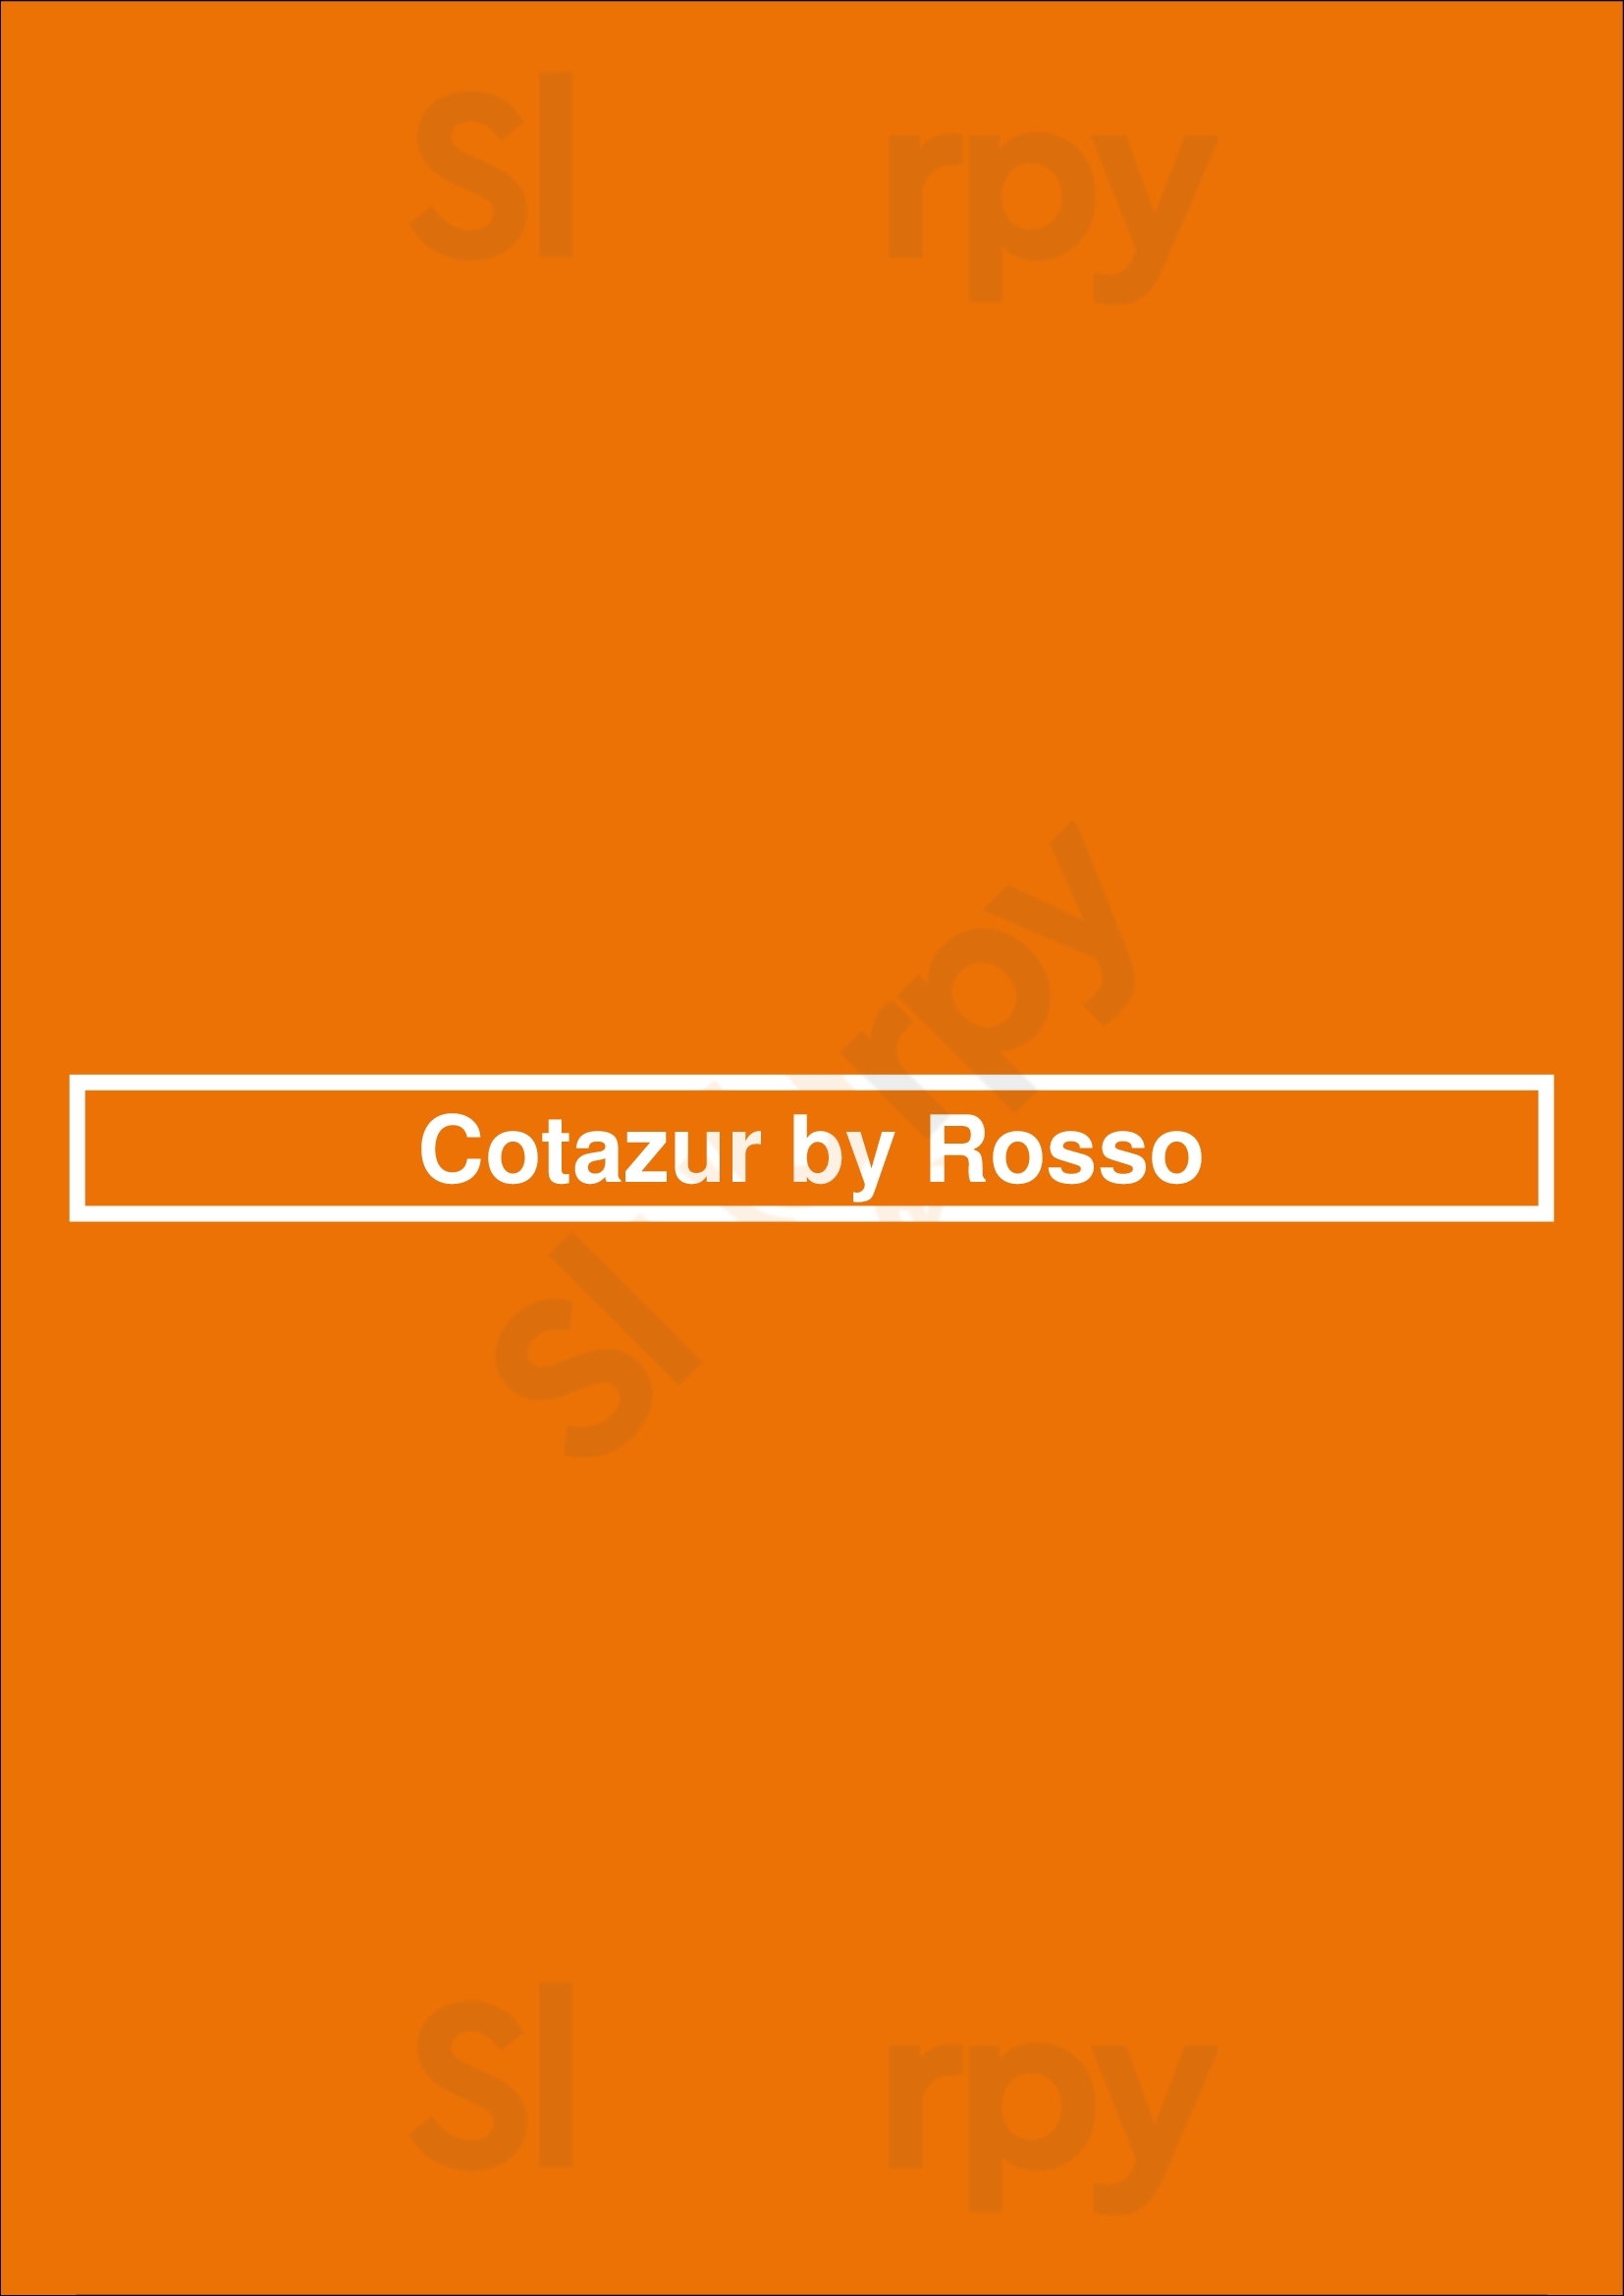 Cotazur By Rosso Rotterdam Menu - 1